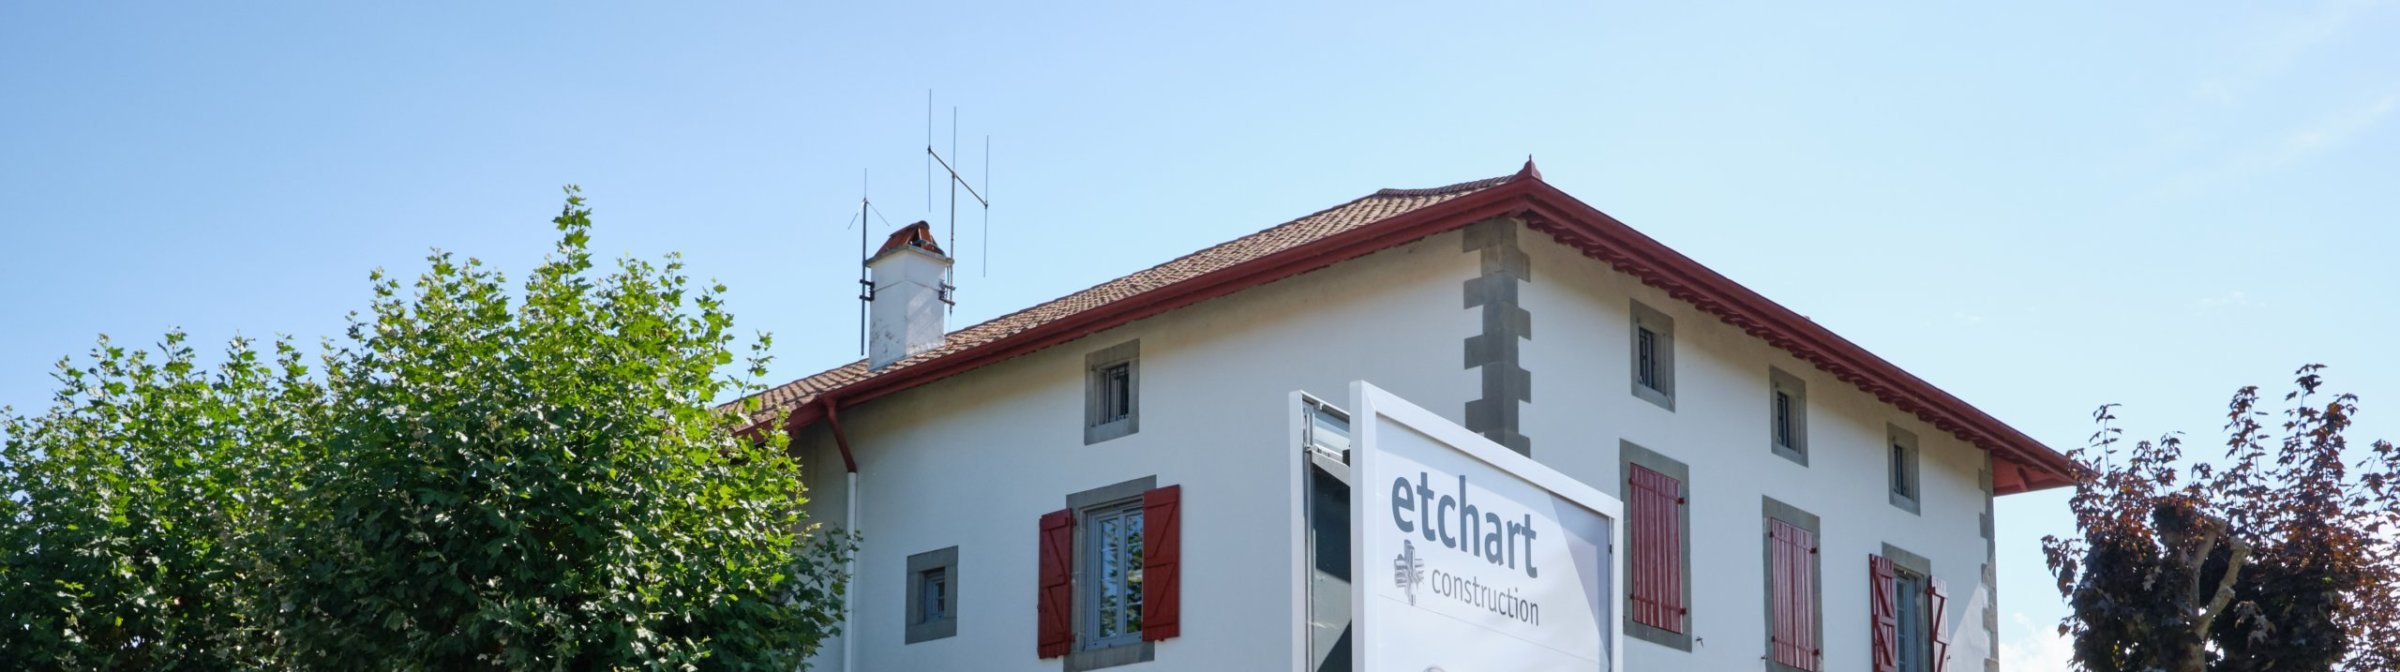 etchart-construction-entreprise